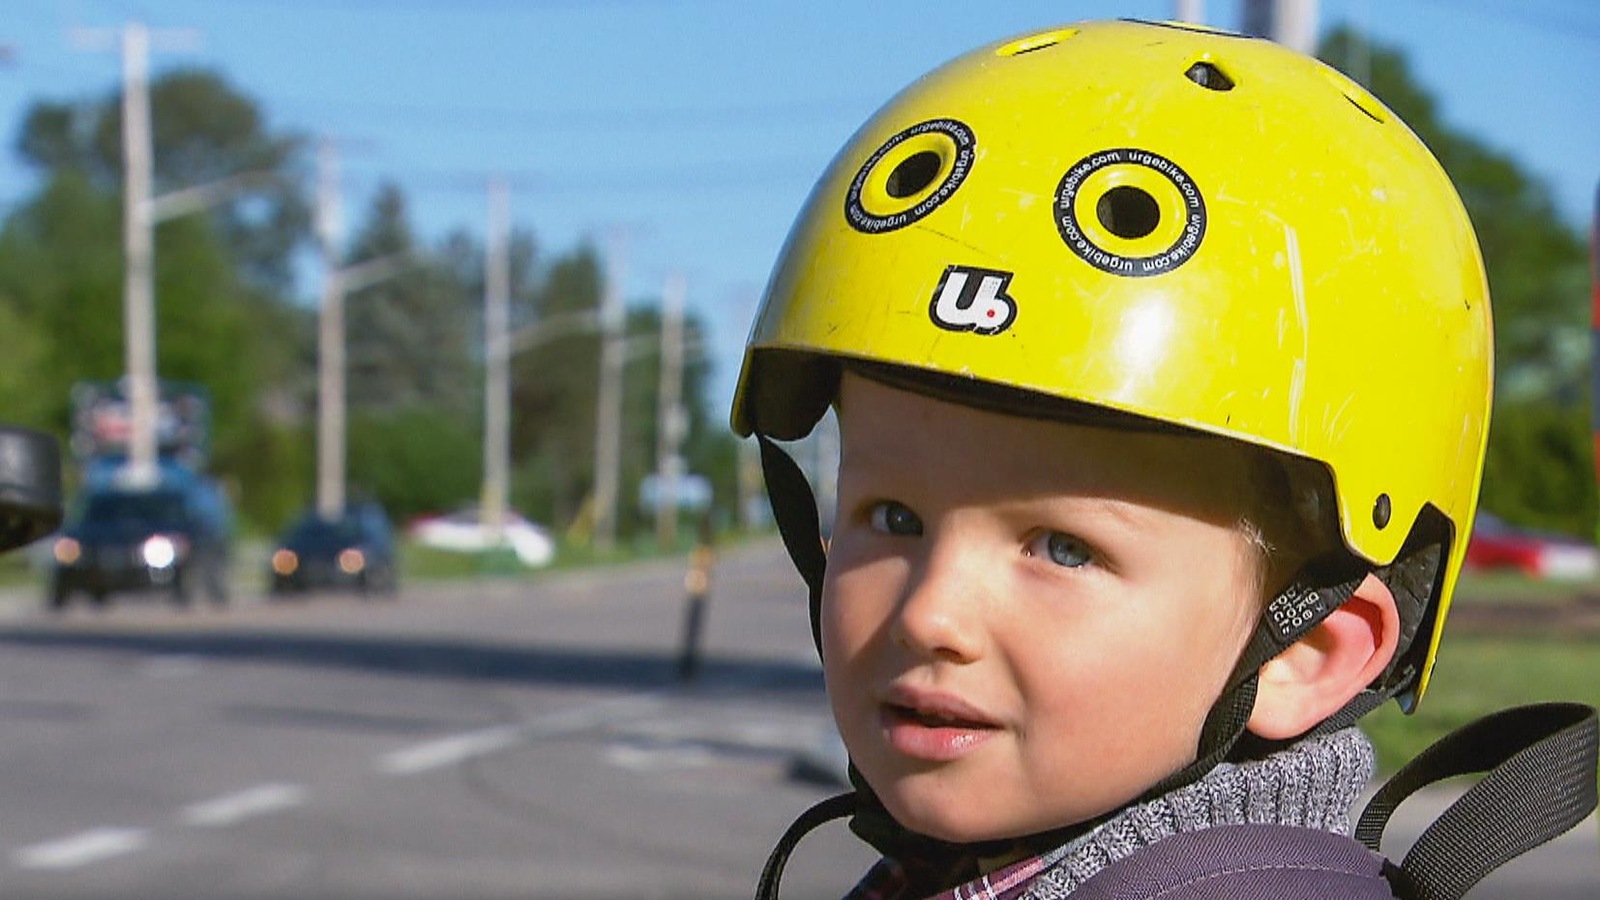 Un enfant portant un casque de vélo jaune regarde la caméra.